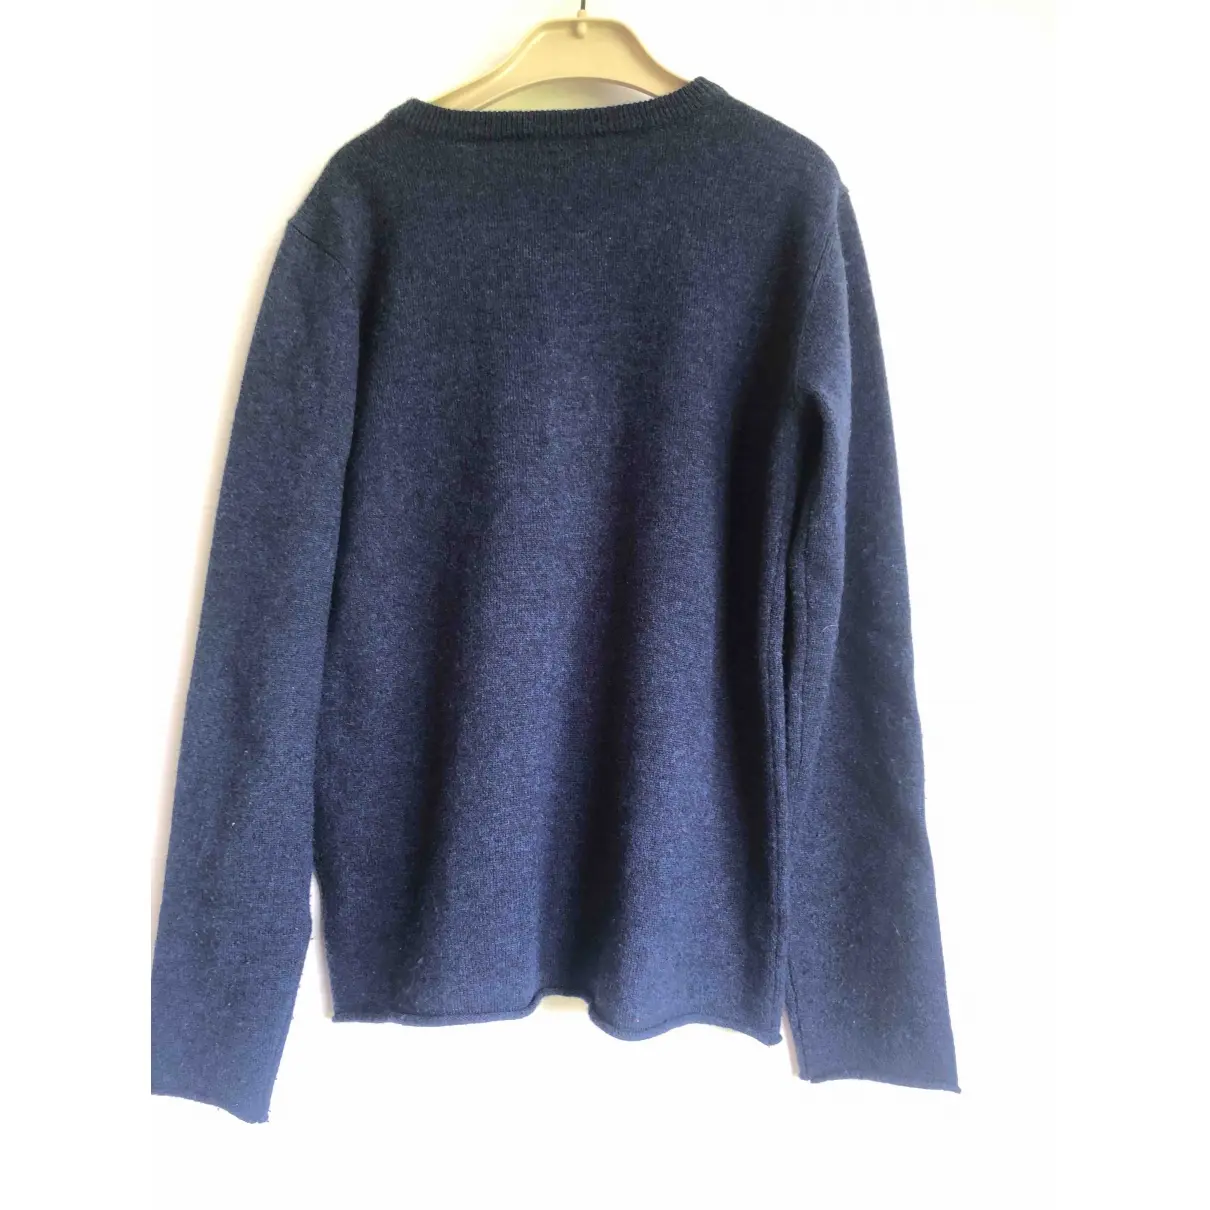 Buy Hartford Wool sweater online